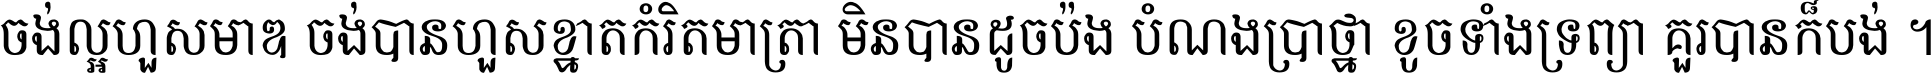 Khmer Chhay Text 7